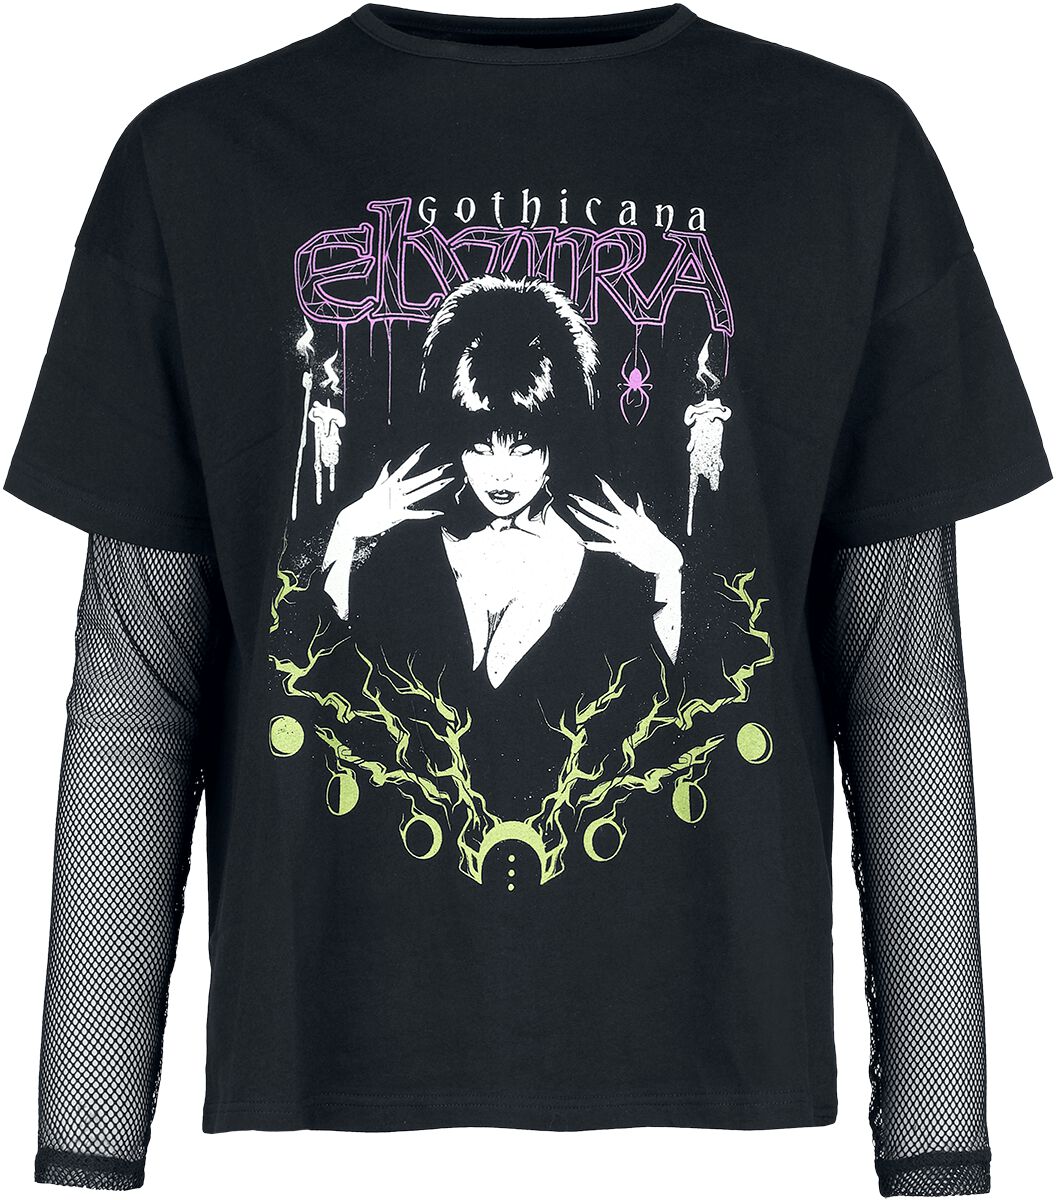 Levně Gothicana by EMP Tričko a tričko s dlouhými rukávy 2 v 1 Gothicana x Elvira Dámské tričko s dlouhými rukávy černá